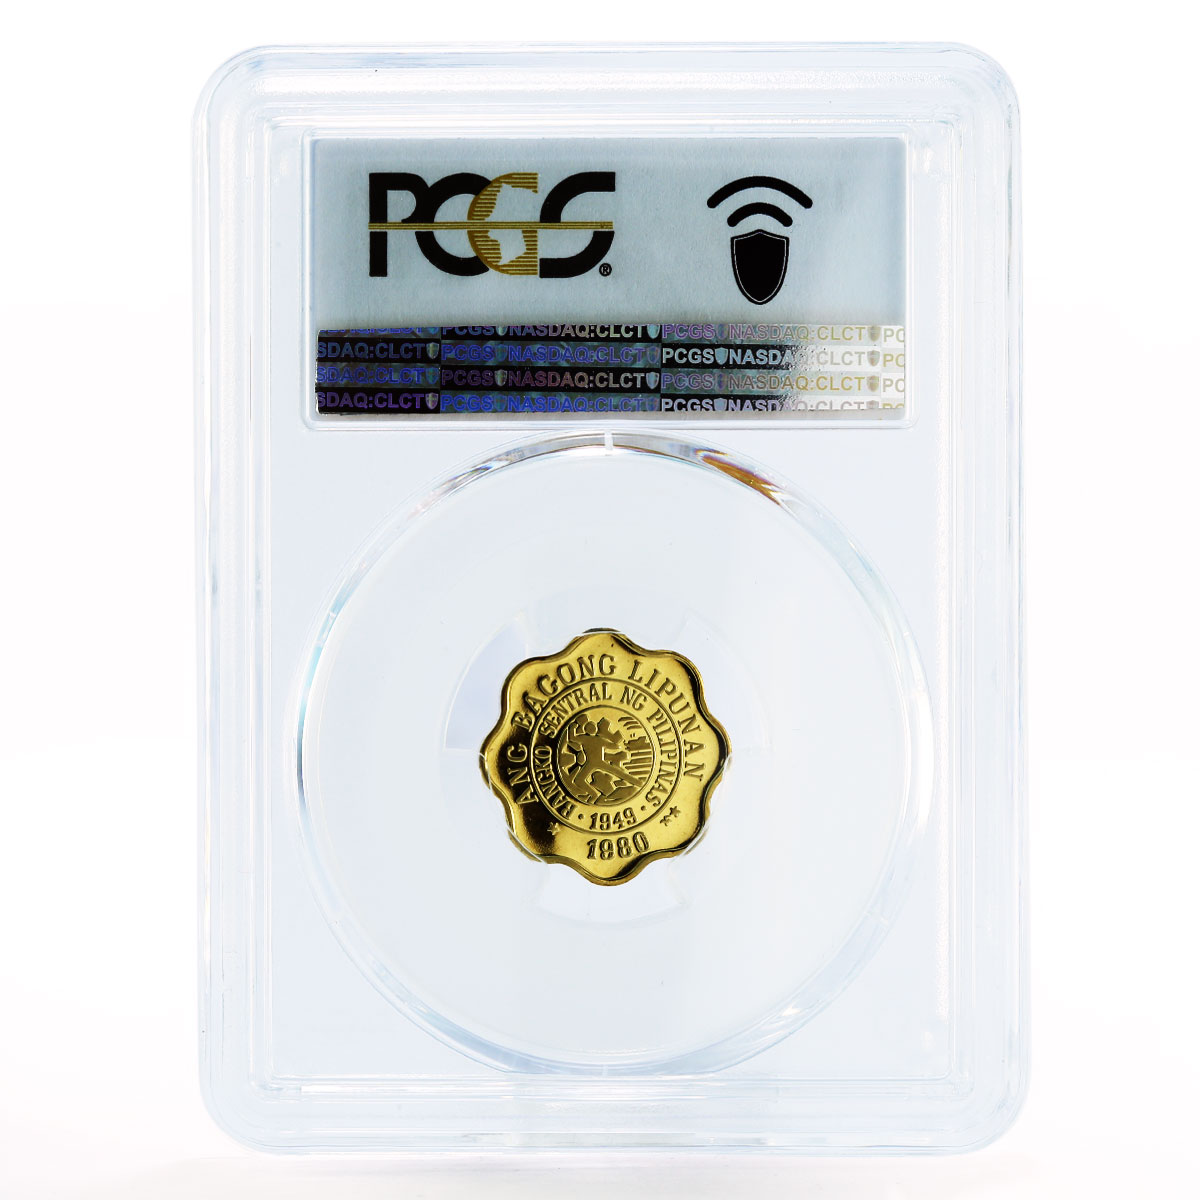 Philippines 5 sentimos Revolutionairy Melchora Aguino PR70 PCGS copper coin 1980